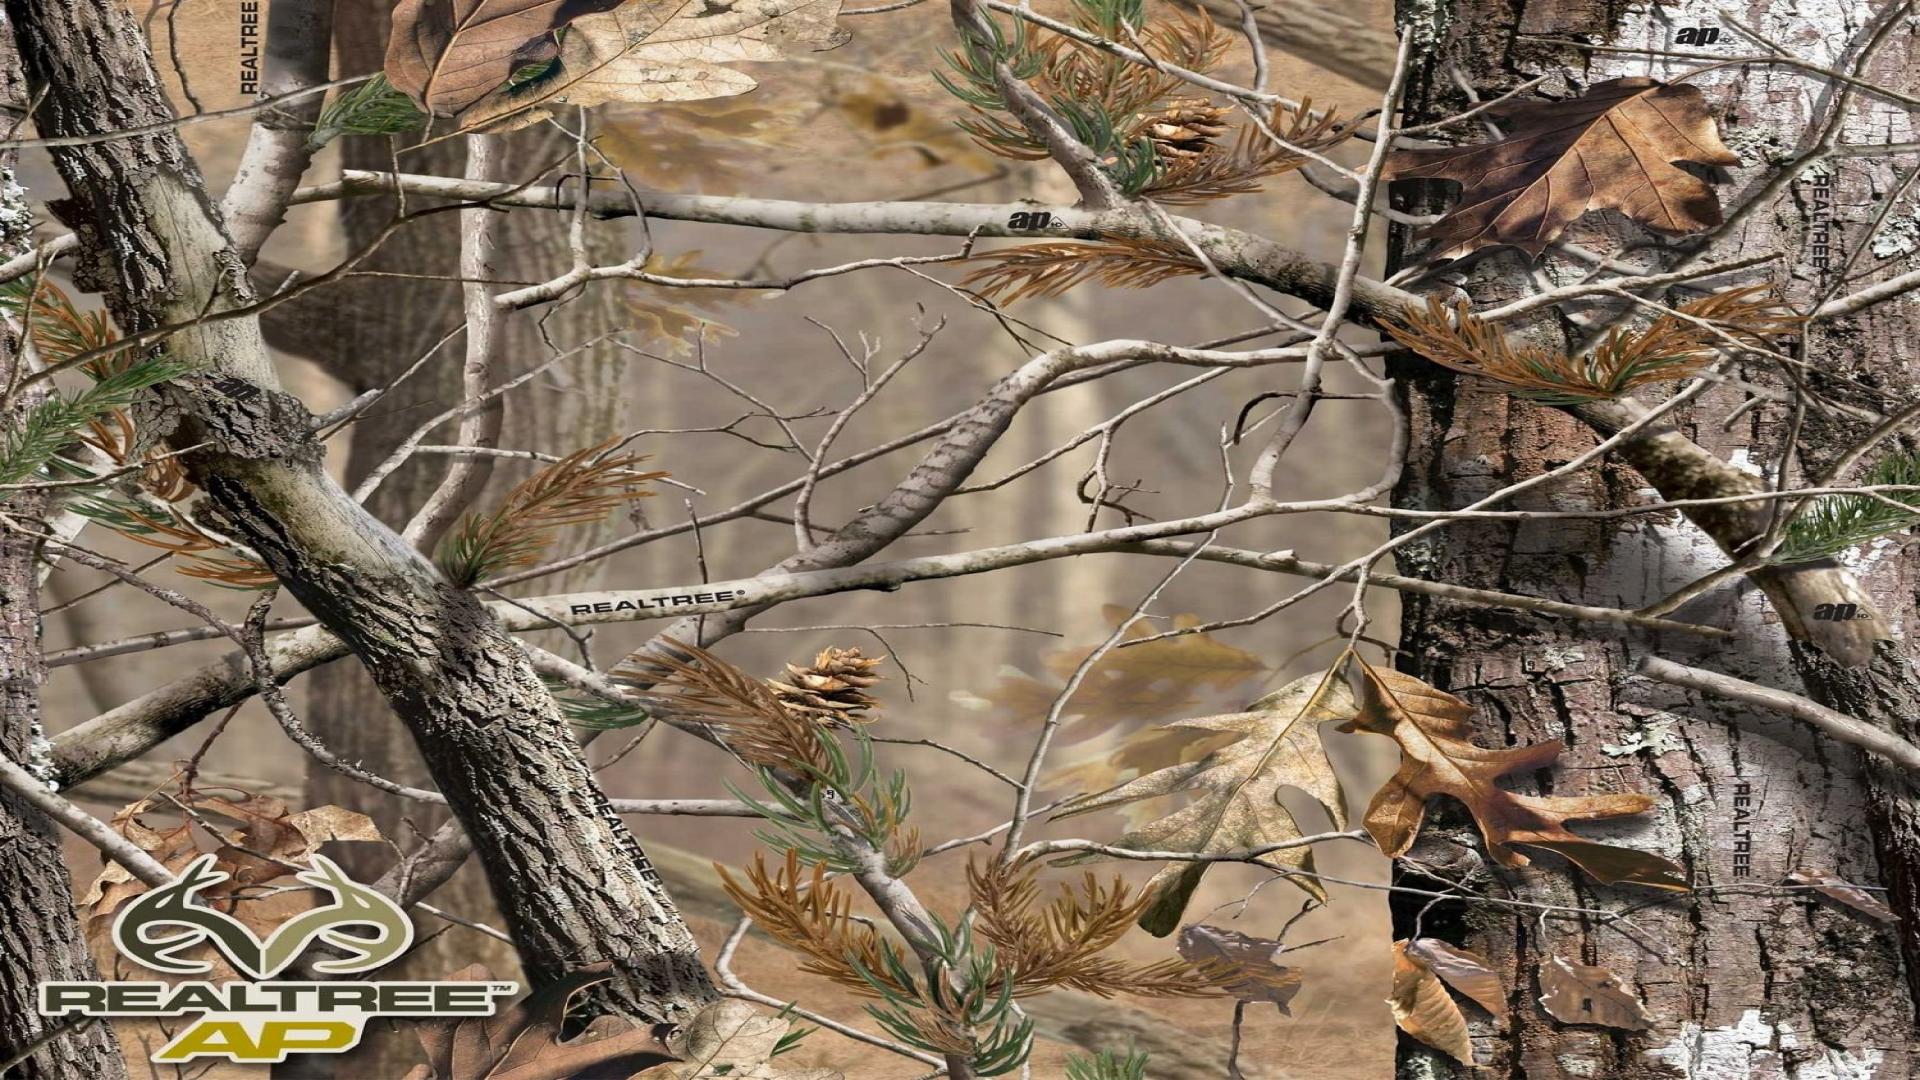 fondo de pantalla de realtree,árbol,planta,fauna silvestre,camuflaje,rock